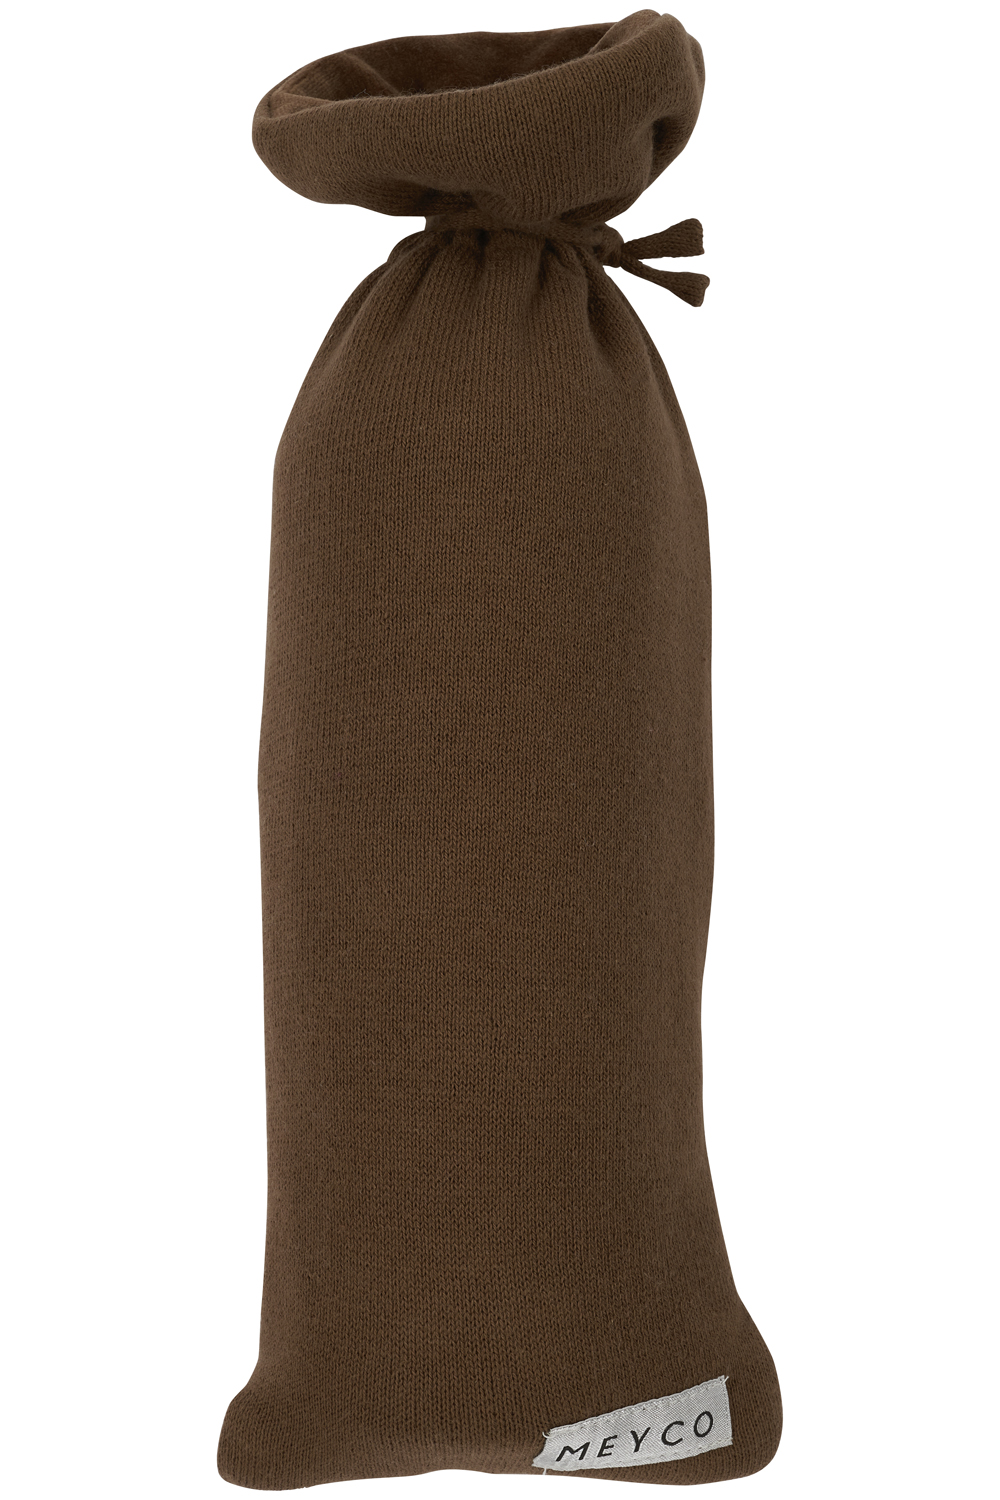 Kruikenzak Knit Basic - Chocolate - 13xh35cm